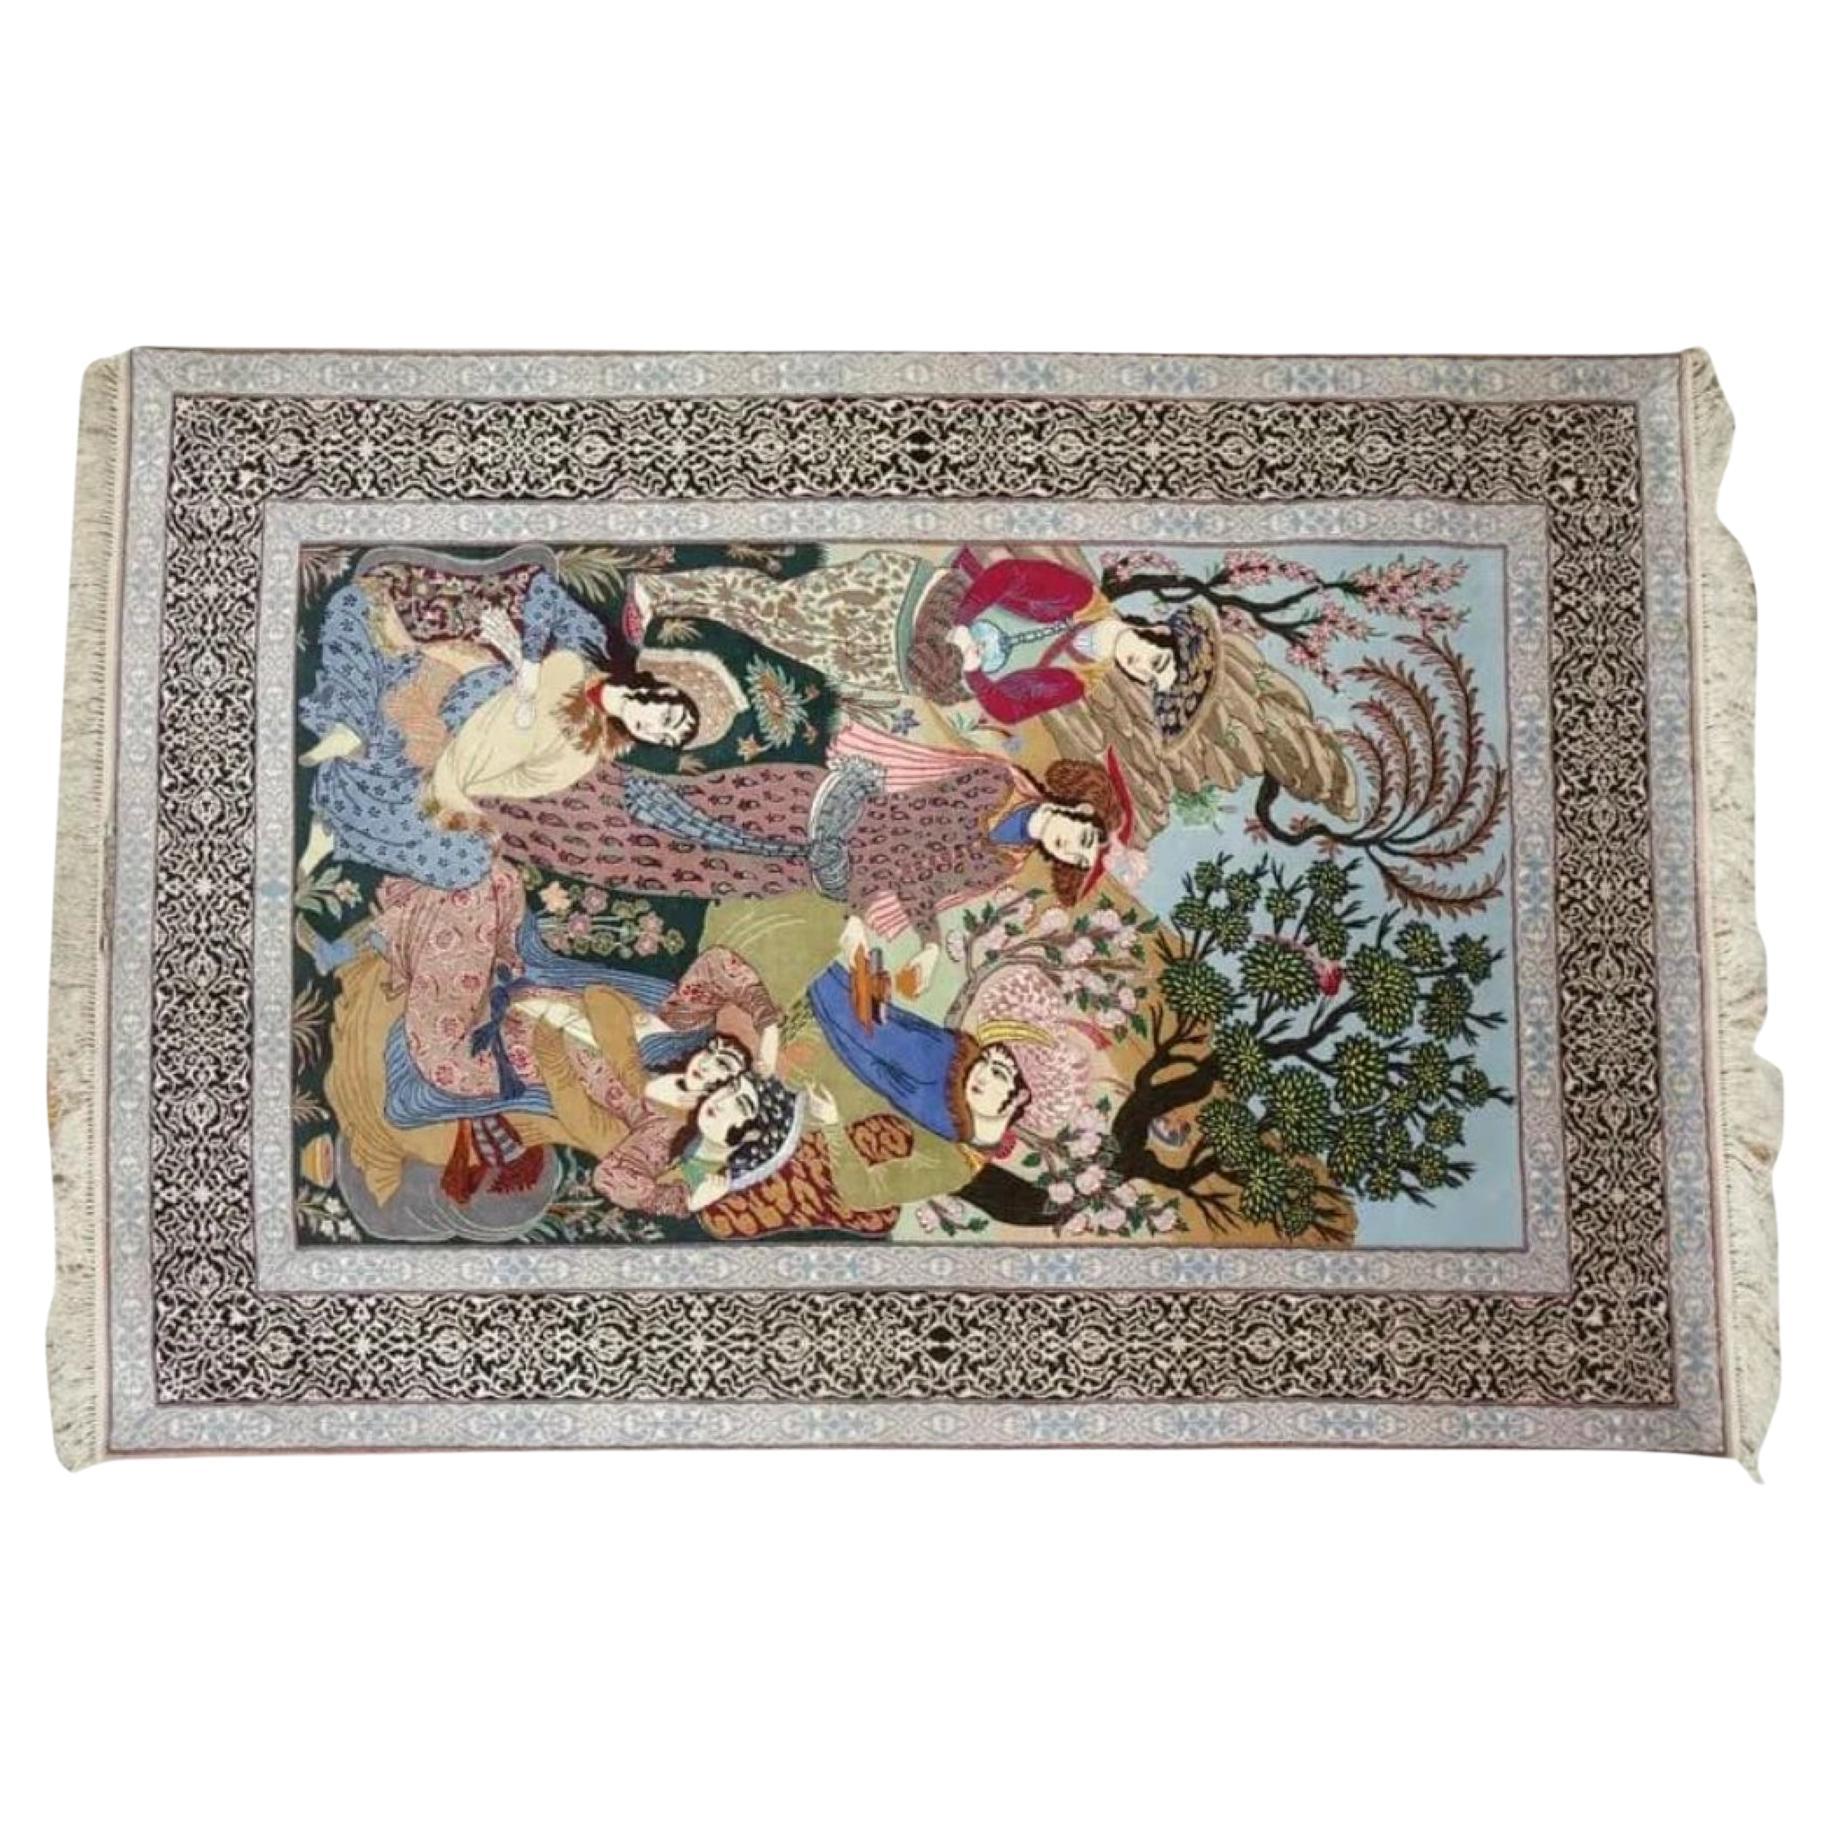 Très beau tapis persan d'Ispahan en soie et laine - 7,7' x 5'